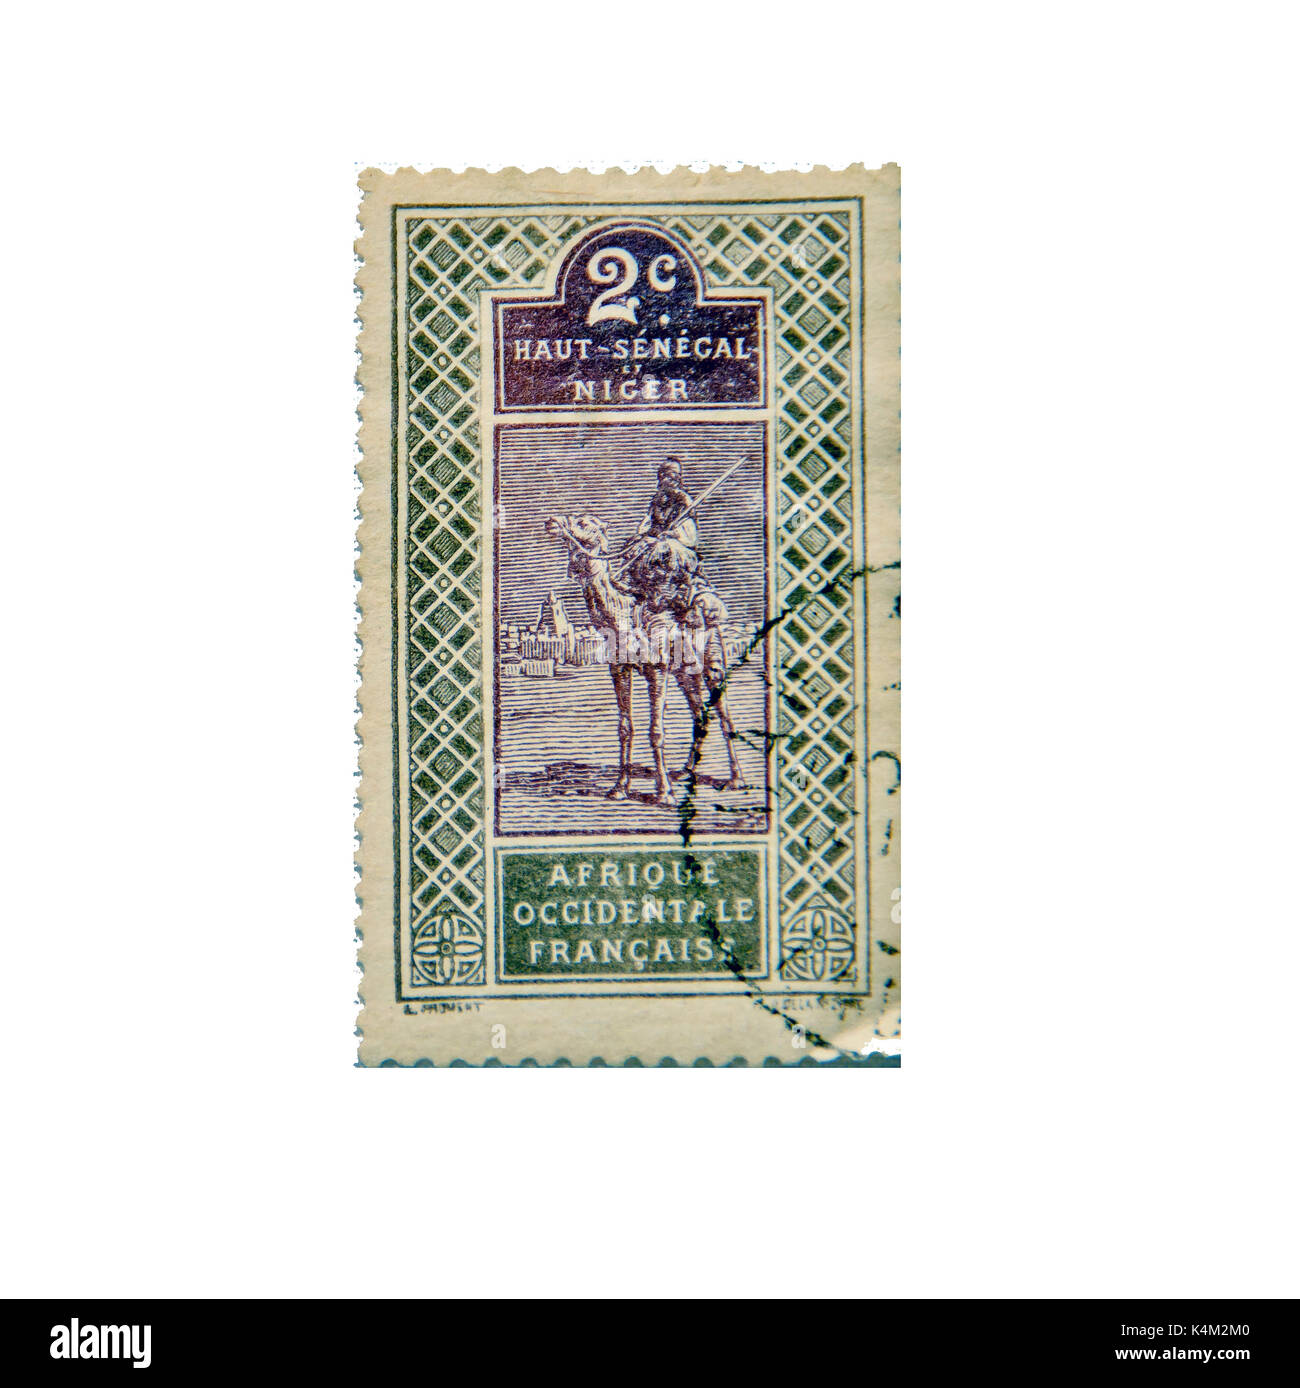 NIGER - CA. 1915: francobollo ca. 1915 dal Niger e Senegal superiore che mostra una scena tradizionale di un uomo su un cammello Foto Stock